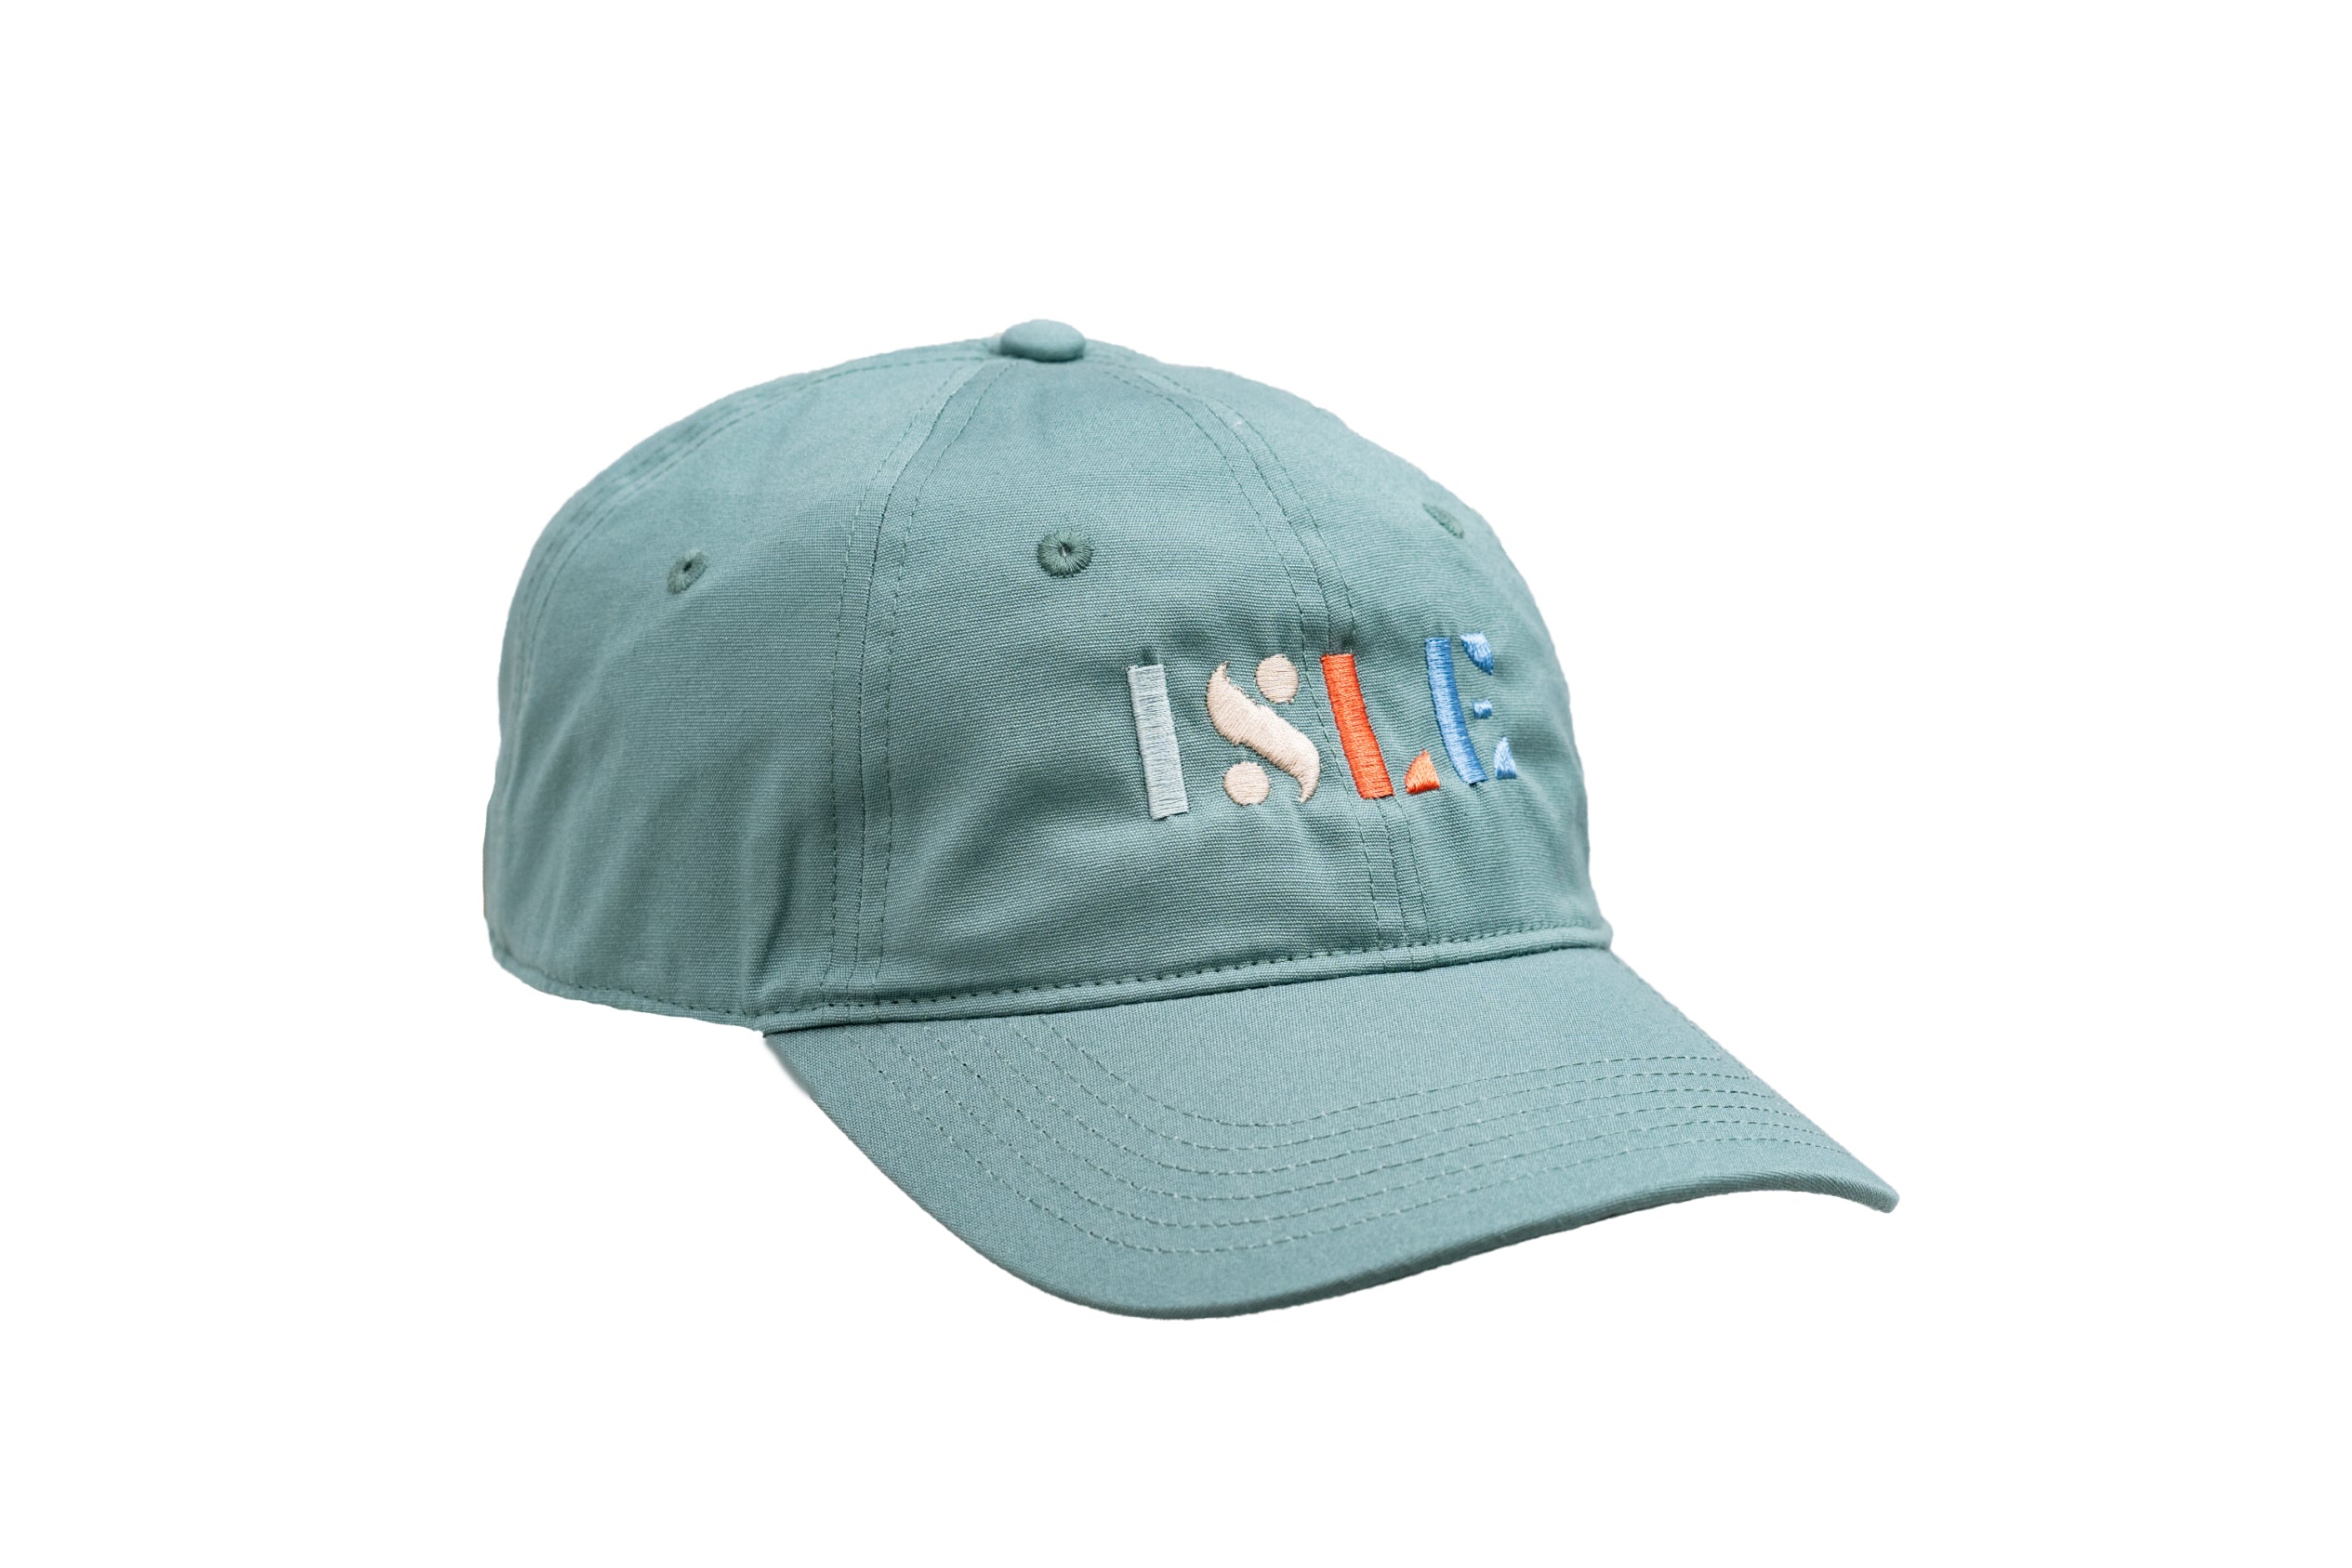 Low Profile Hat in Seafoam